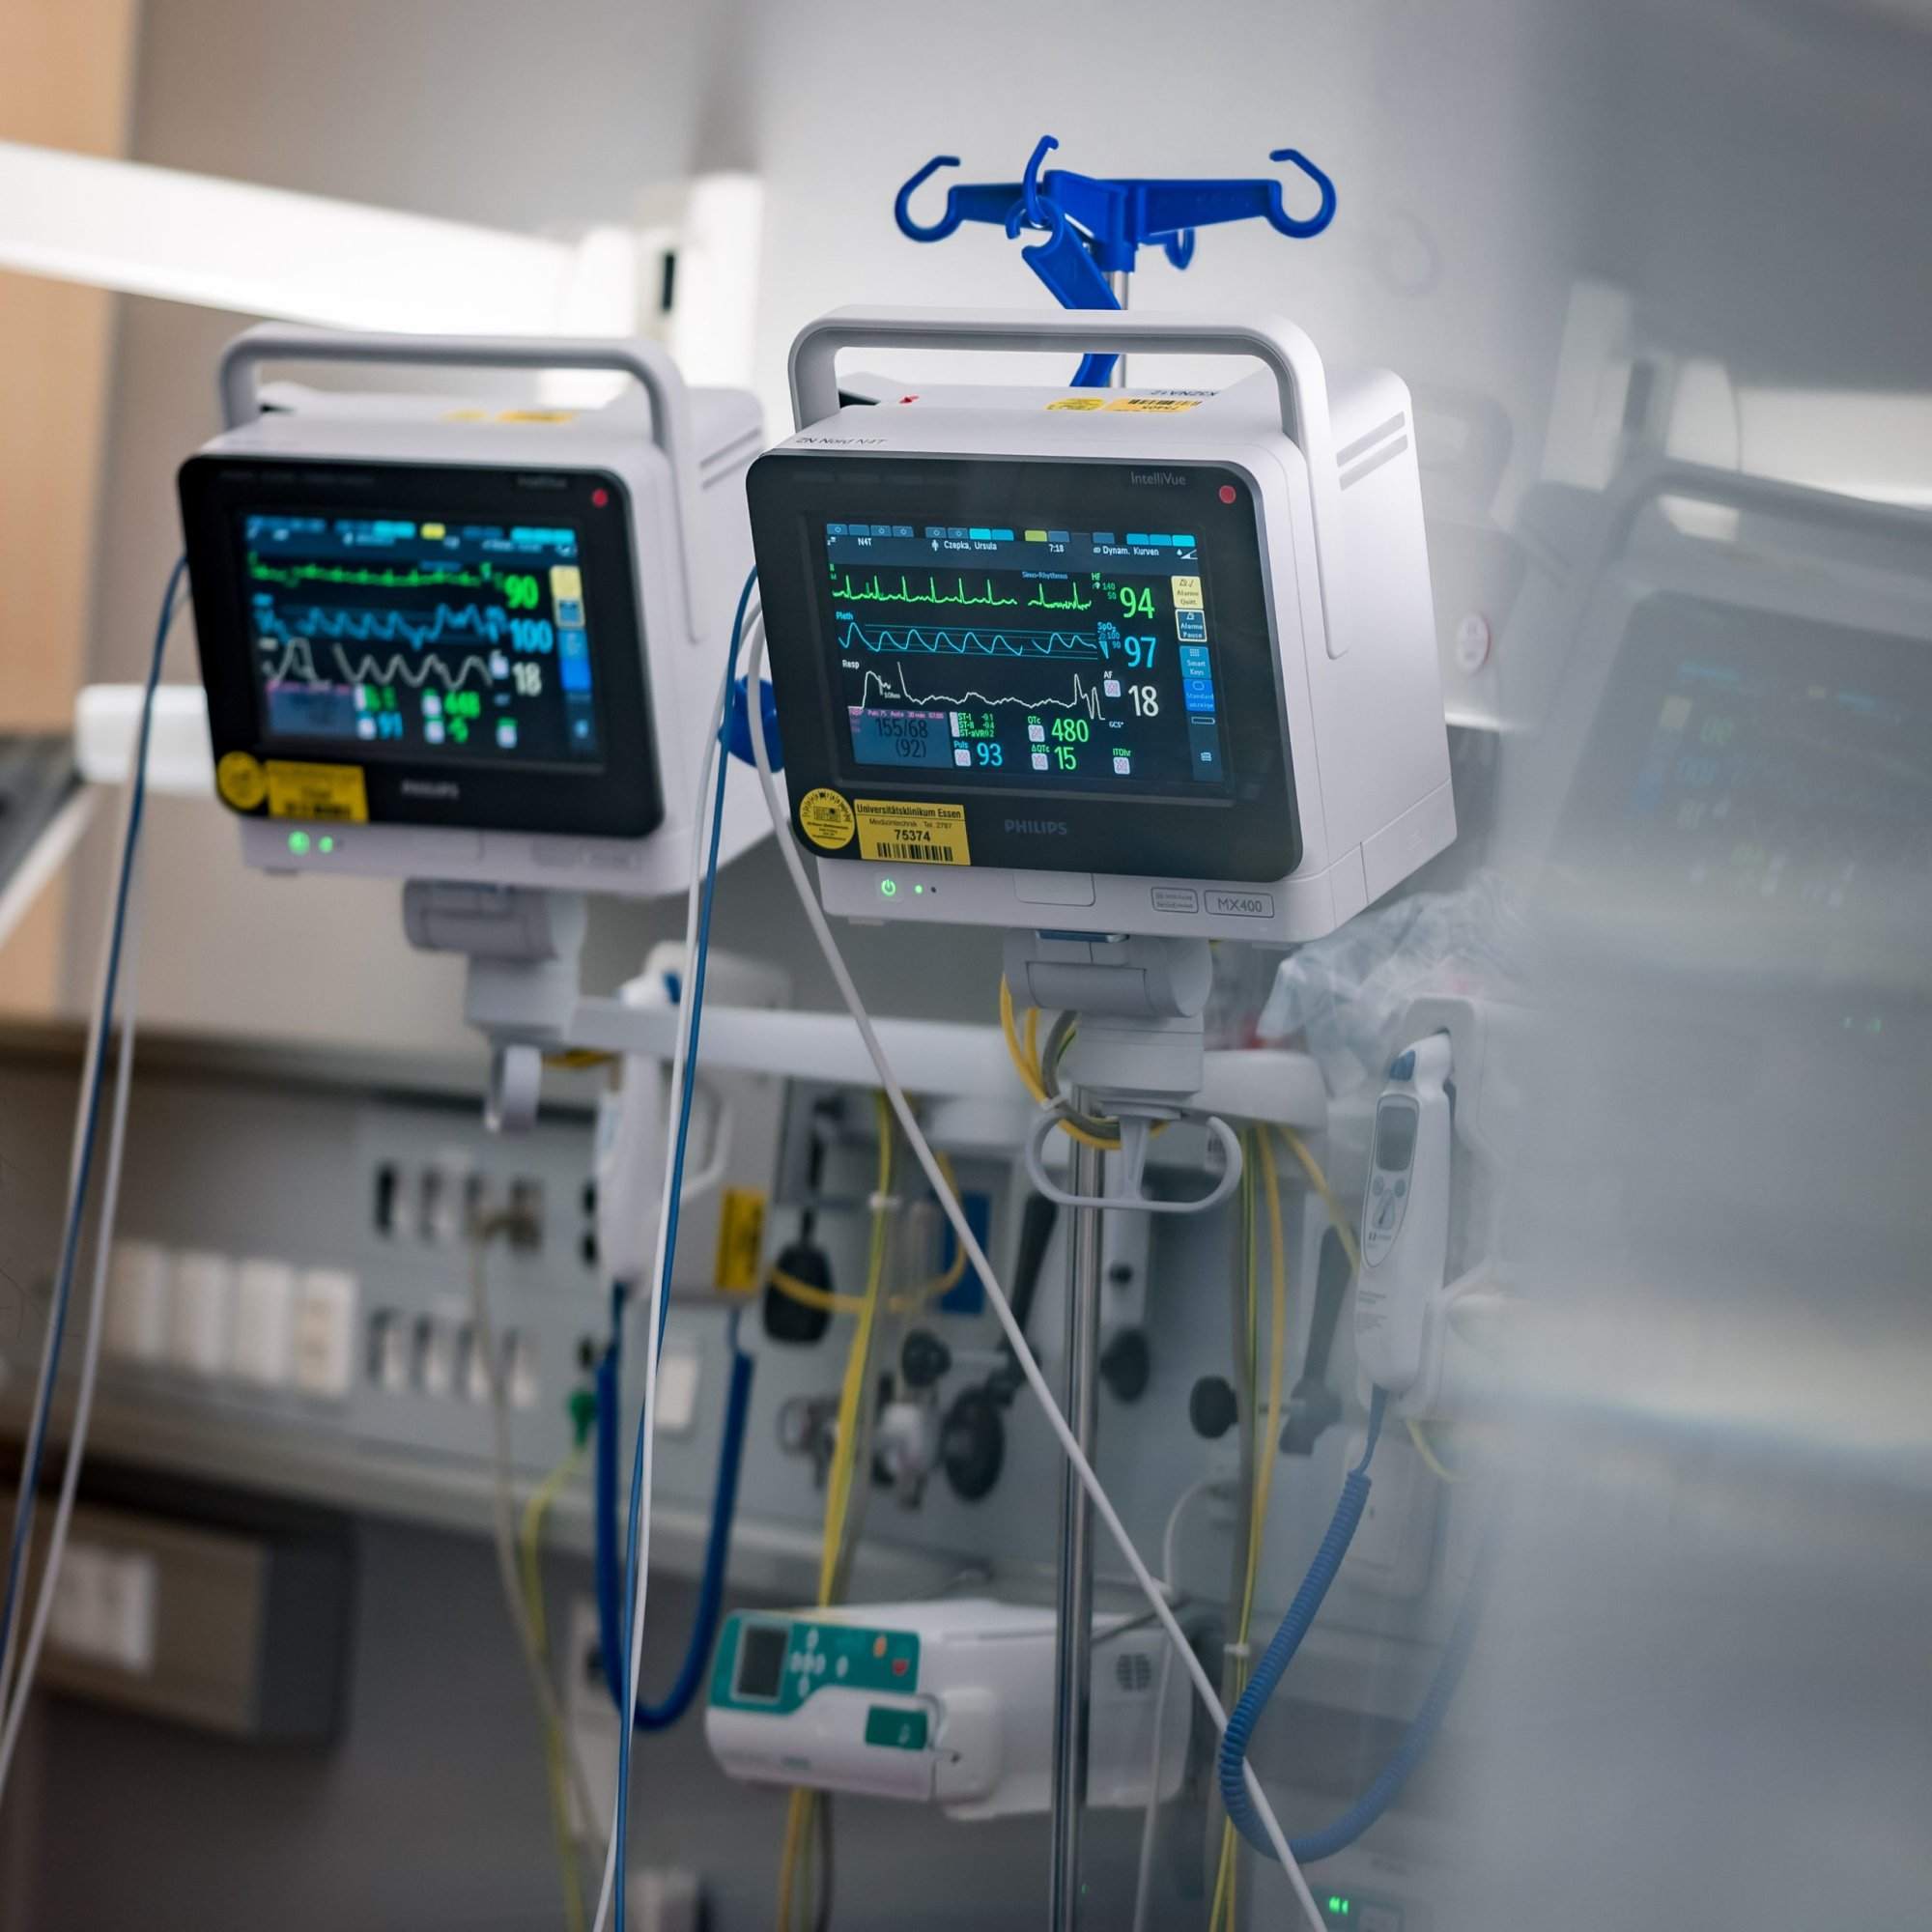 Das Bild zeigt zwei Monitore in einem Krankenhauszimmer. Die Monitore zeigen verschiedene Vitalzeichen eines Patienten, darunter Herzfrequenz, Blutdruck, Sauerstoffsättigung und Atemfrequenz